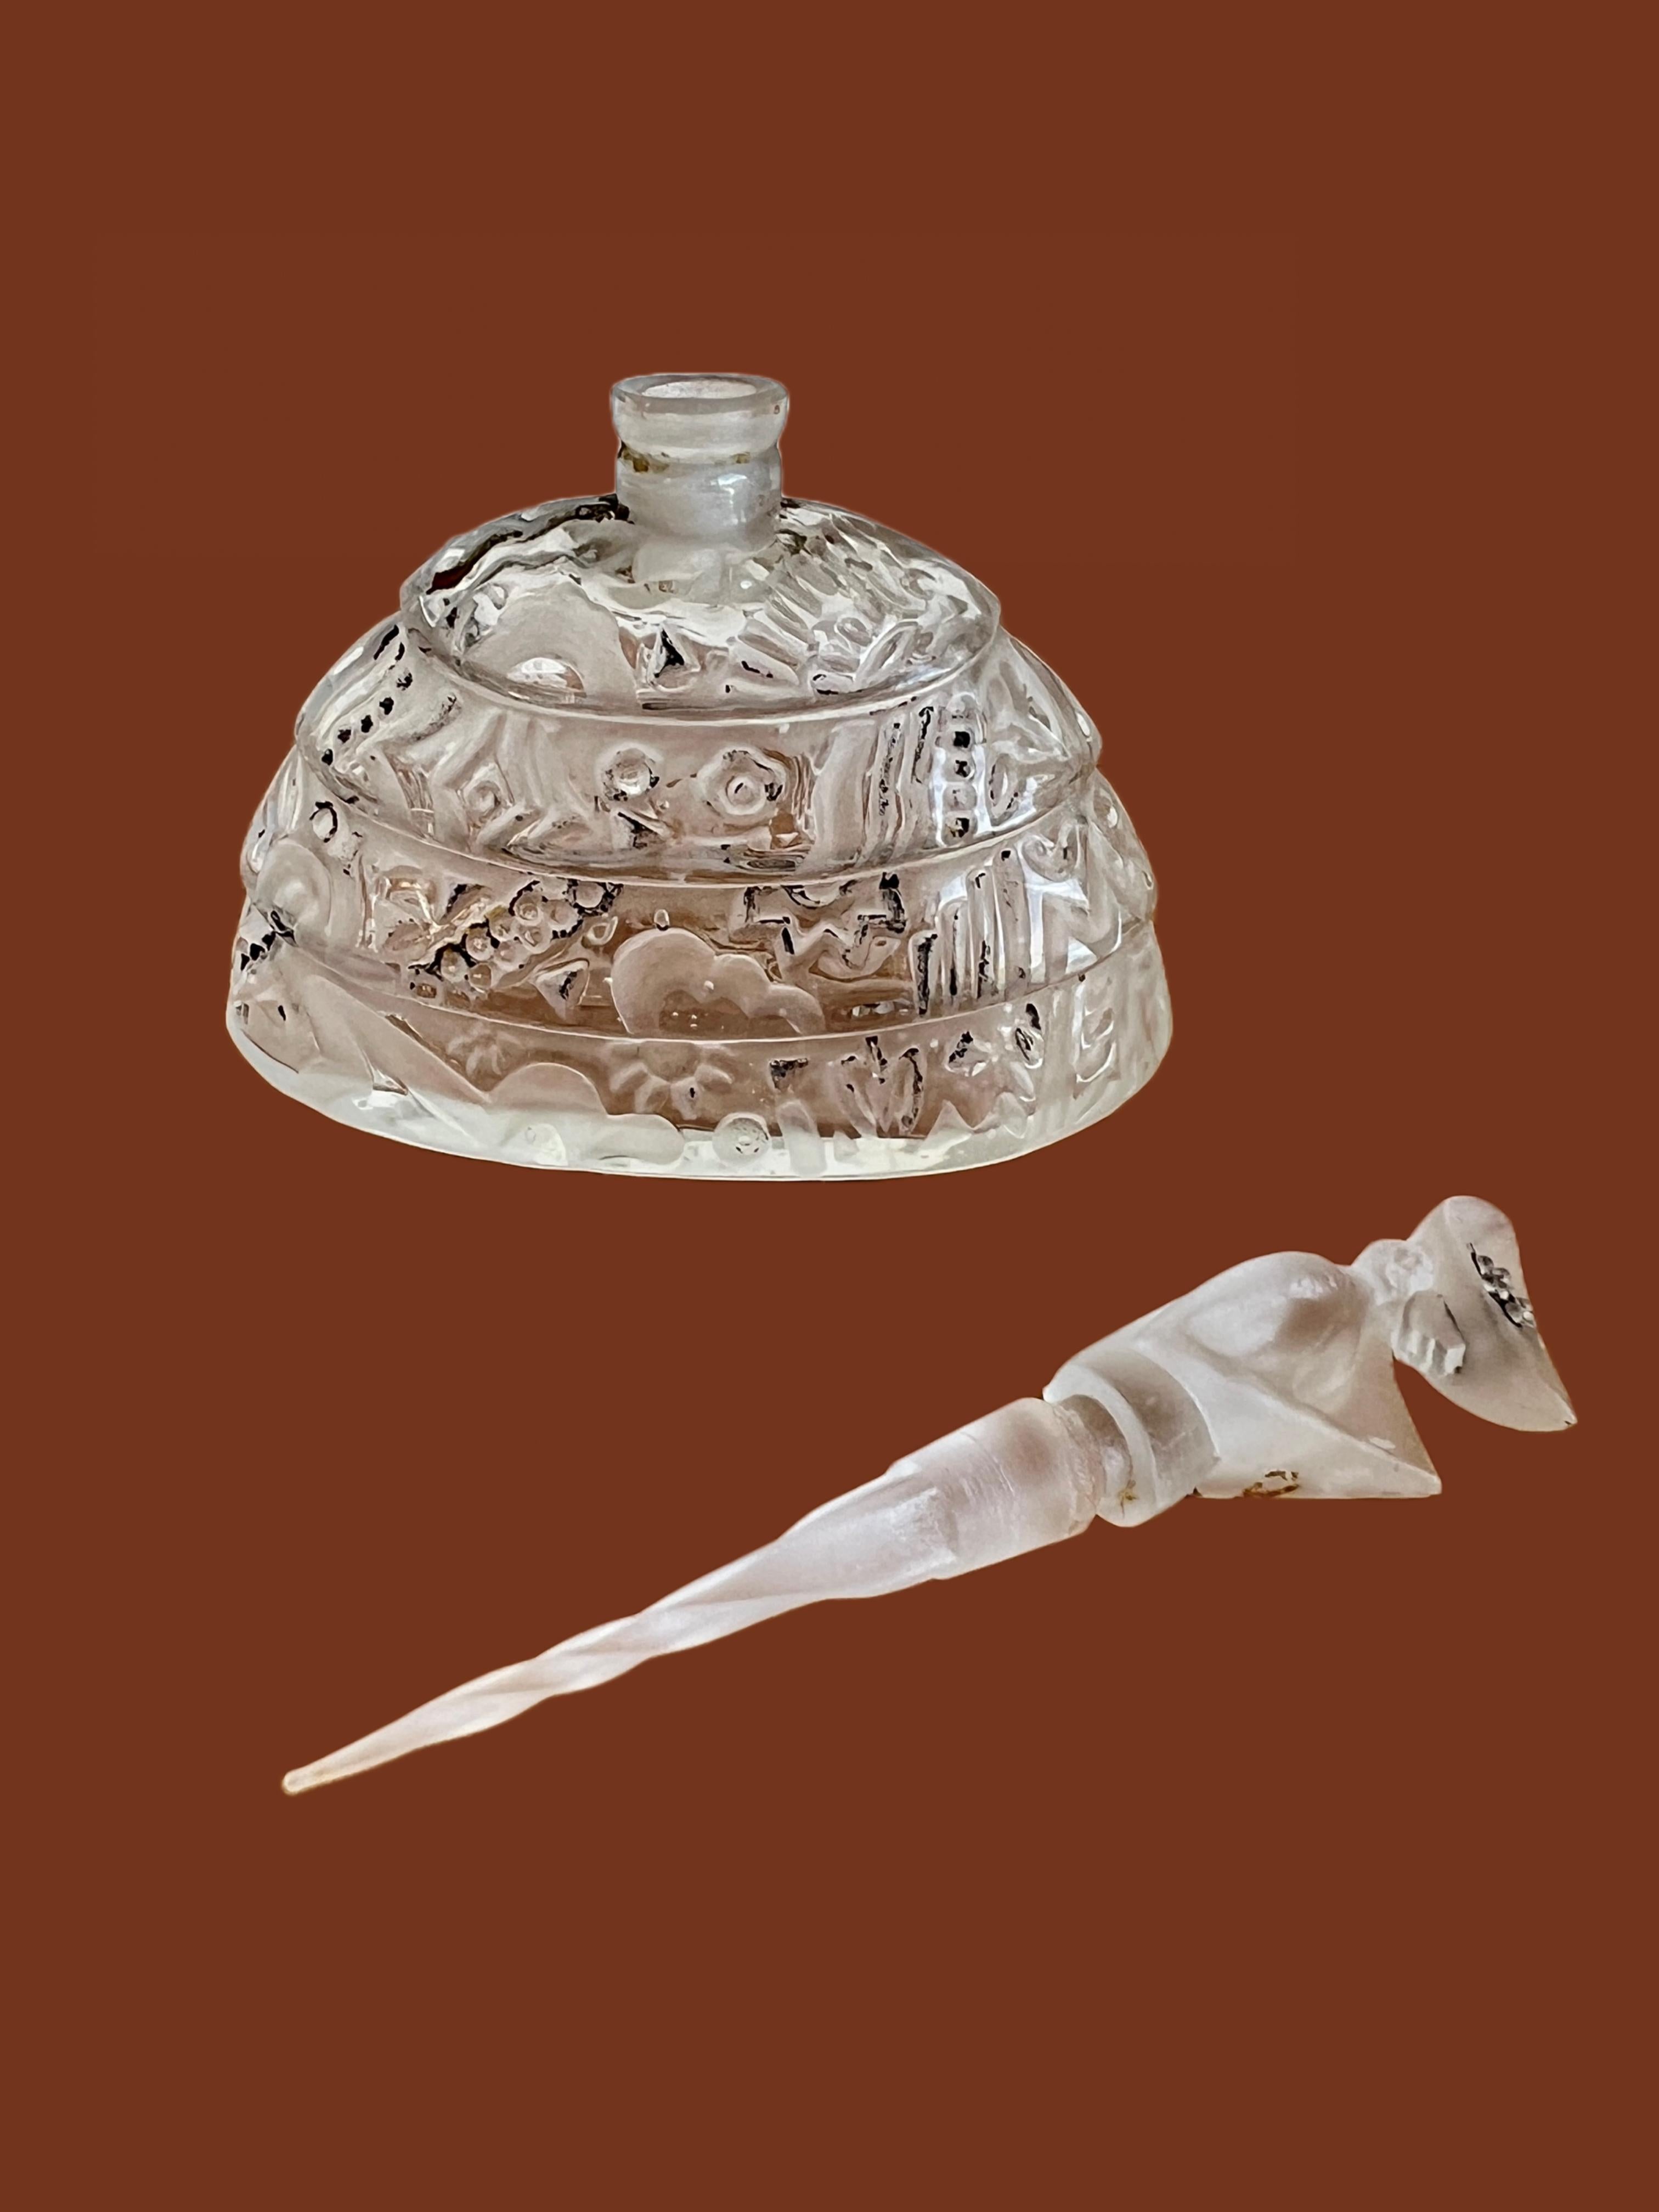 Unglaublicher und seltener figuraler Parfümflakon, entworfen von Albert Mosheim für das Haus Tre-jur. Sie enthielt einst das Parfüm 